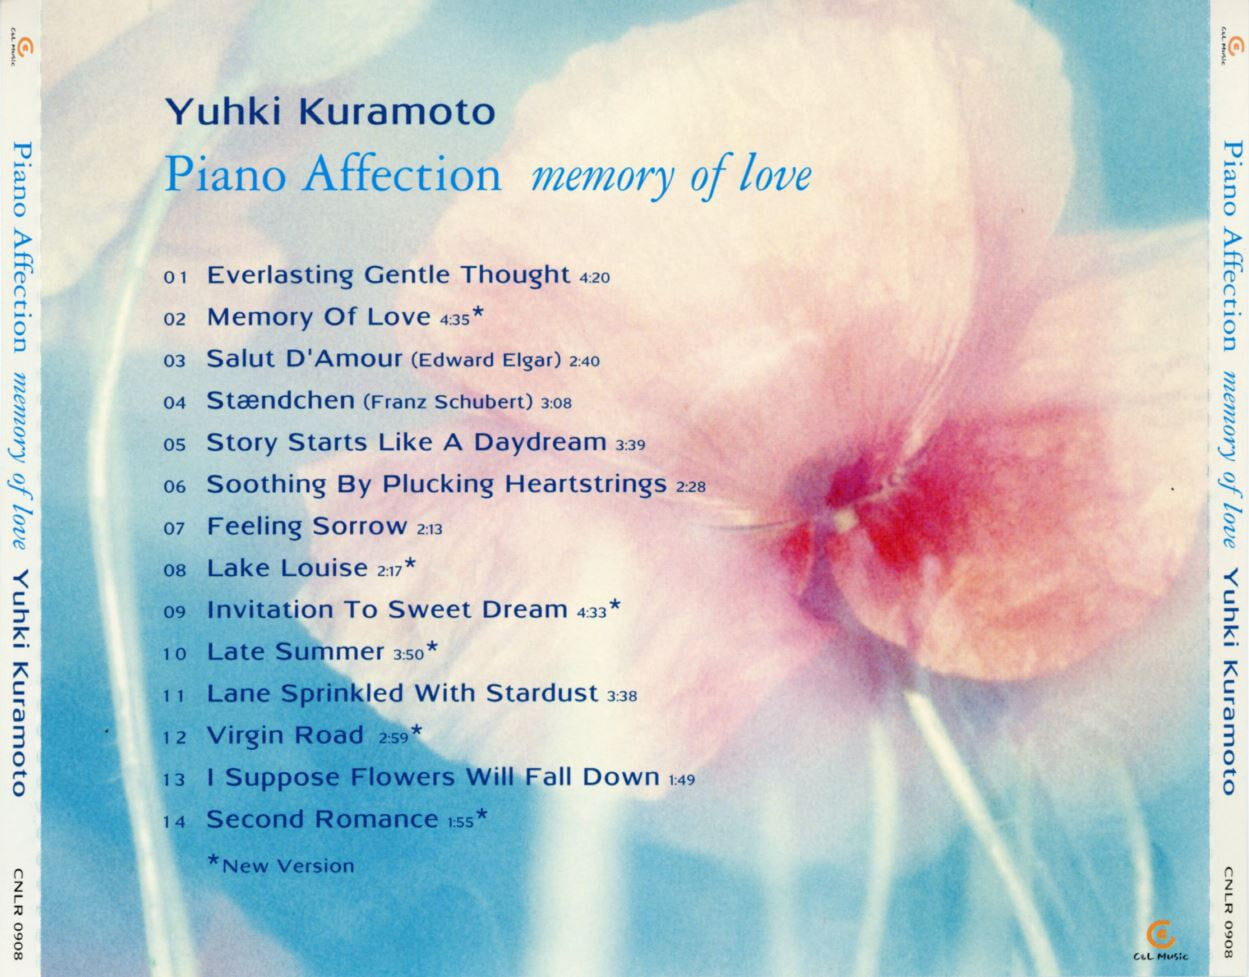 유키 구라모토 - Yuhki Kuramoto - Piano Affection (Memory Of Love) 